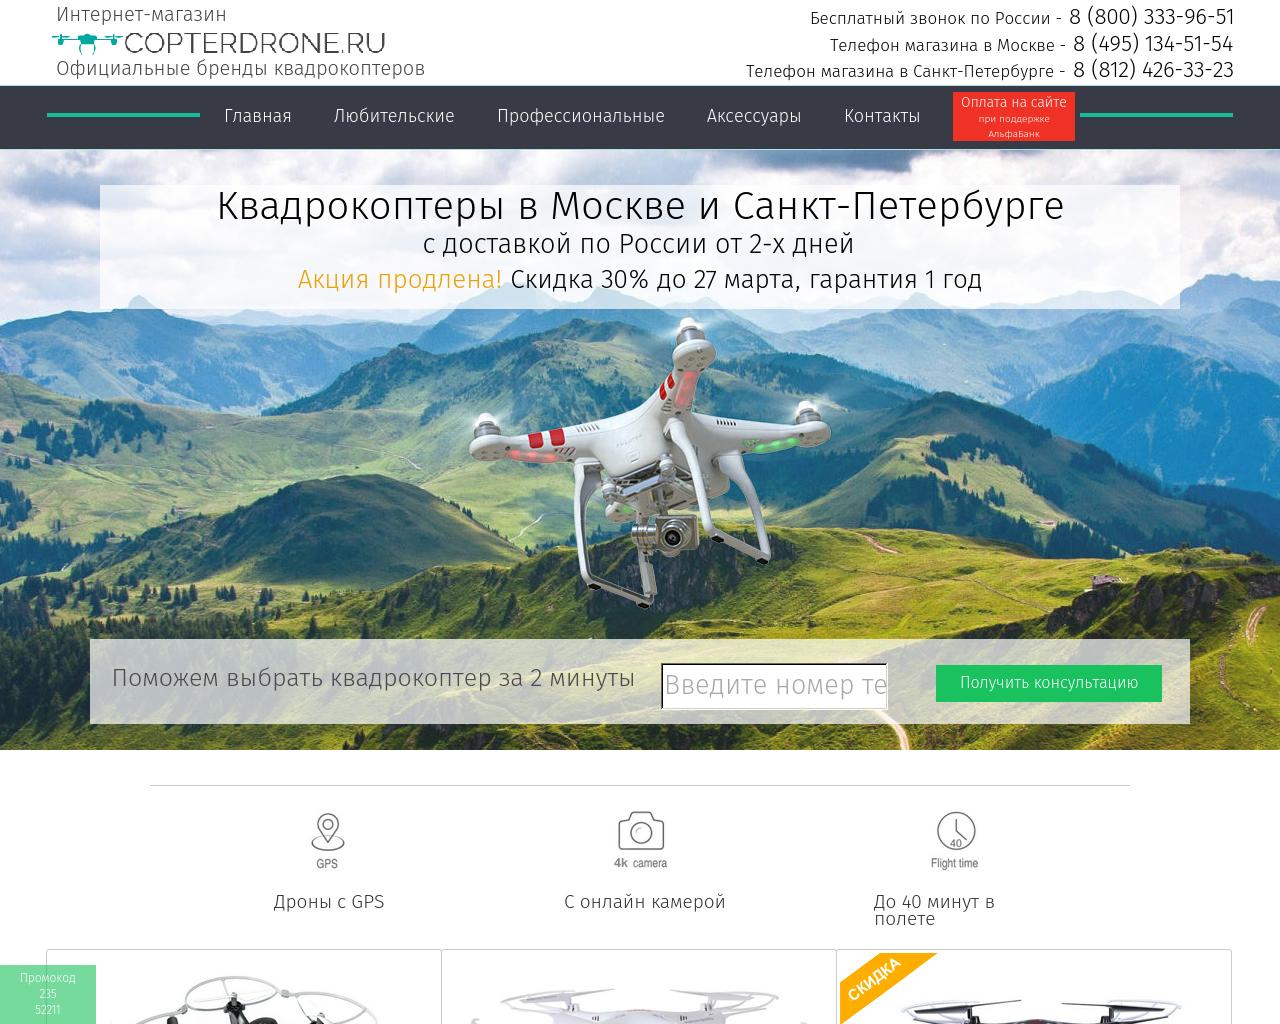 Изображение сайта copterdrone.ru в разрешении 1280x1024